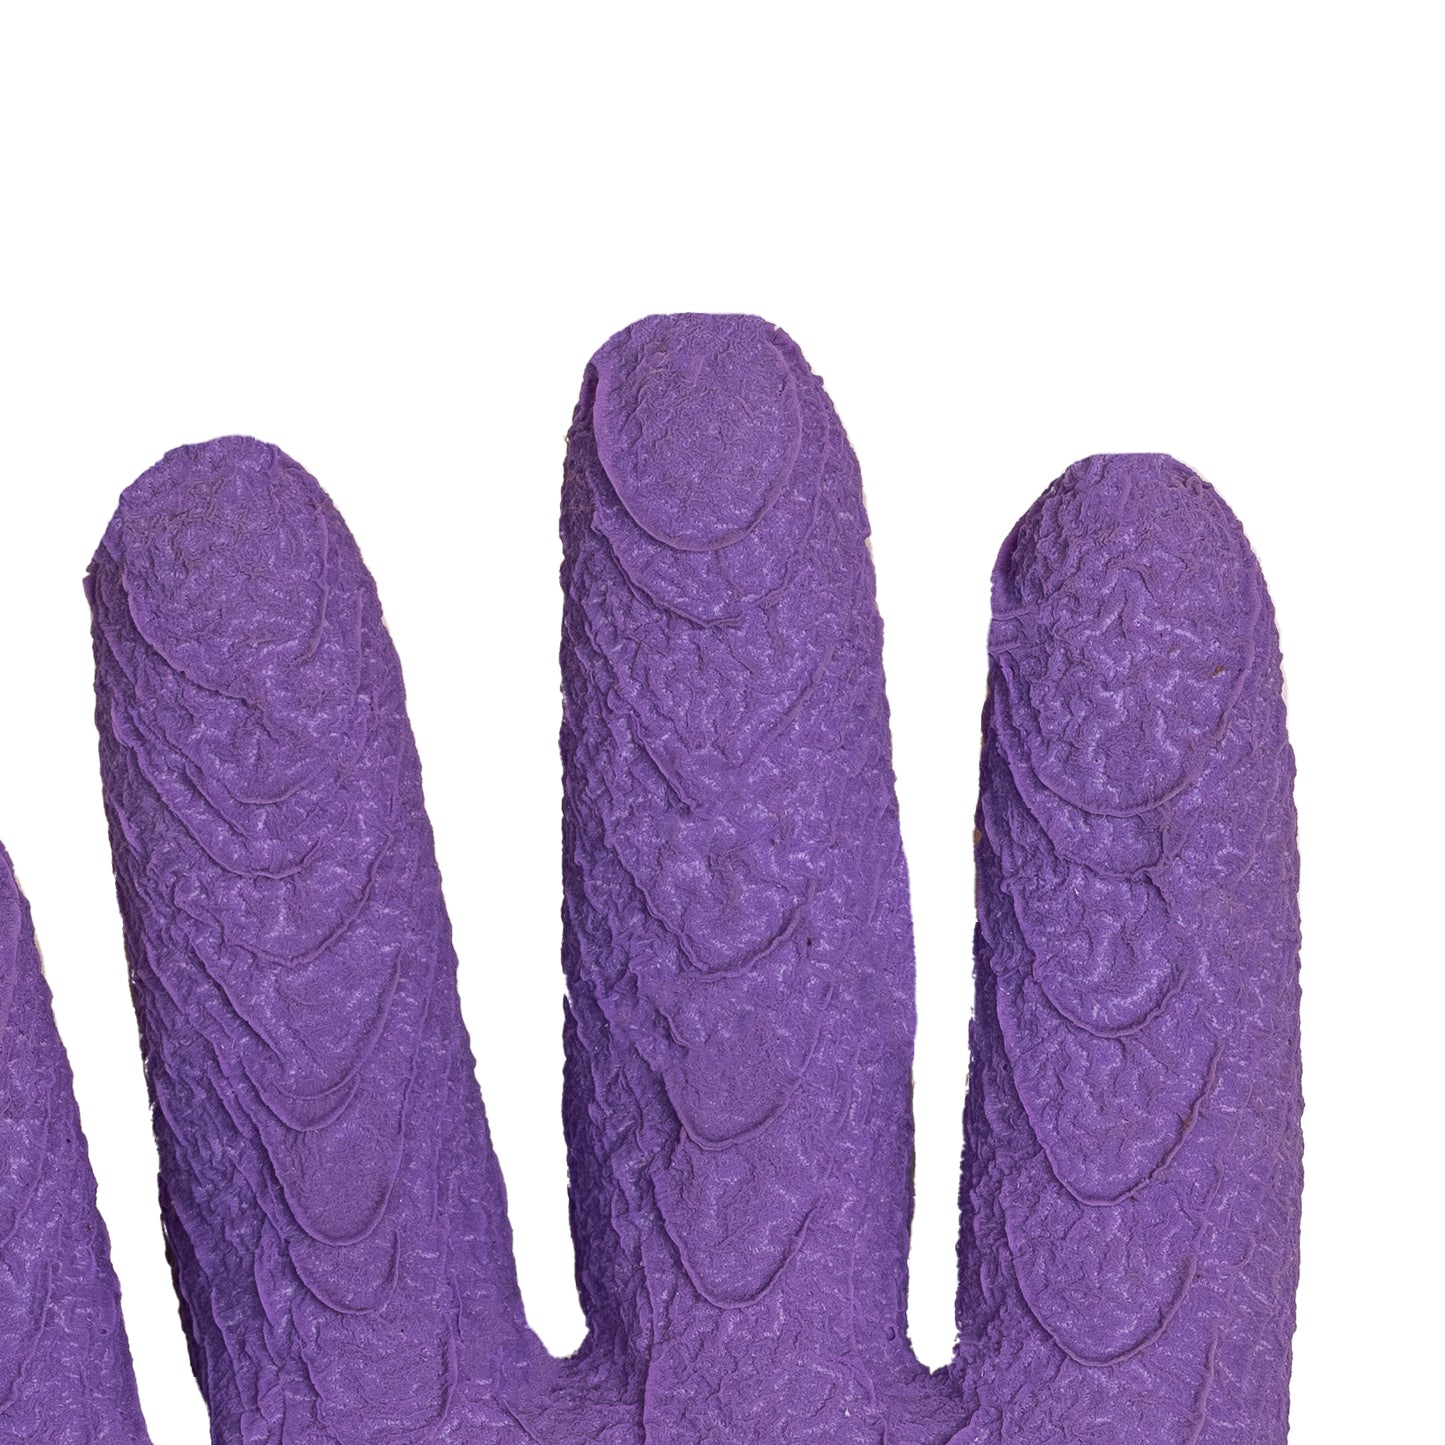 Get a Grip! Size 8 Lavender